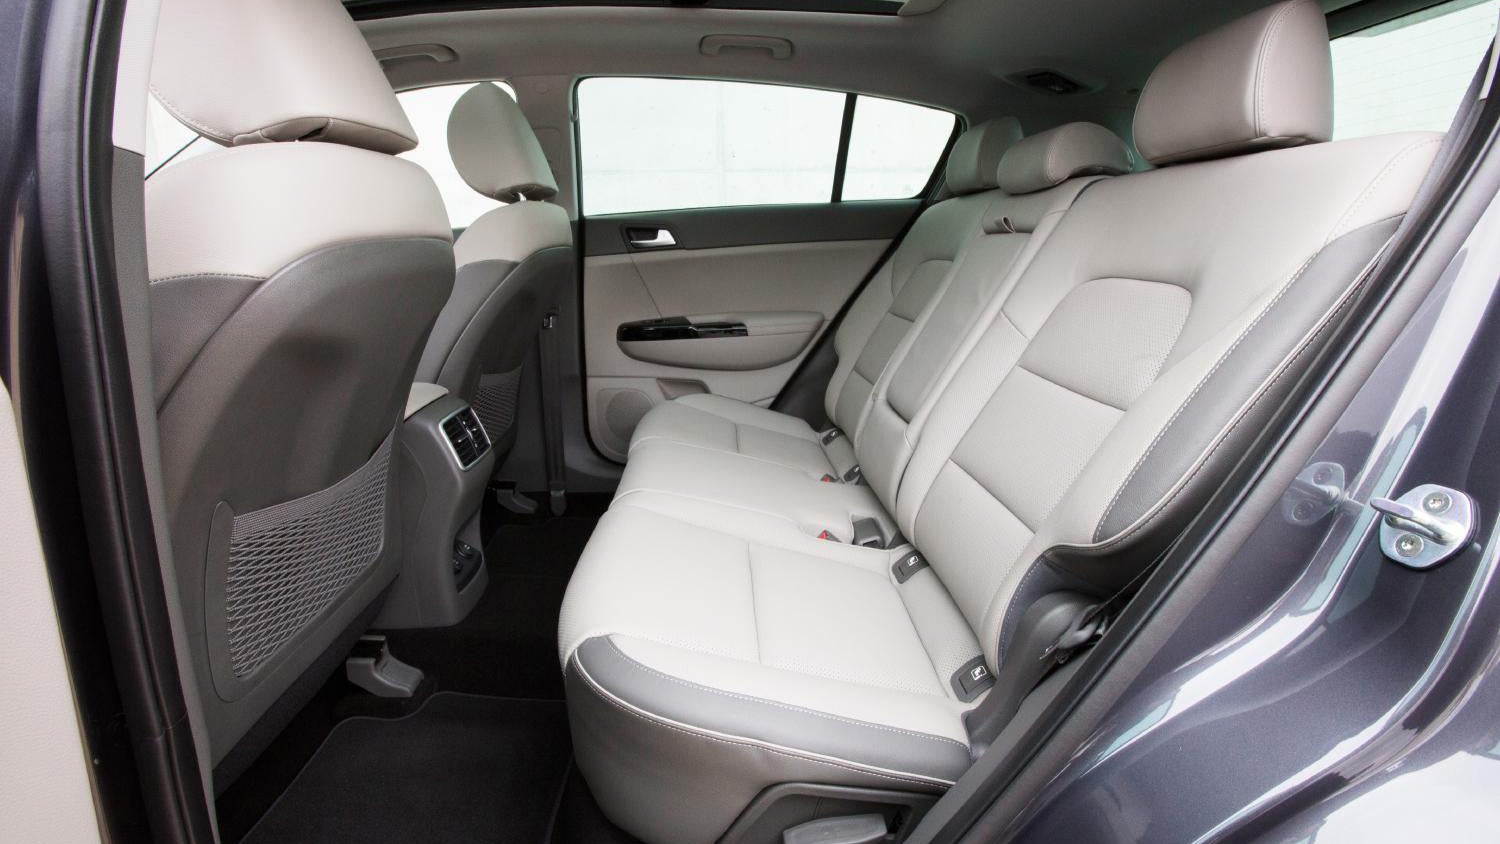 Interior view of Kia Sportage showing rear seats and door design.